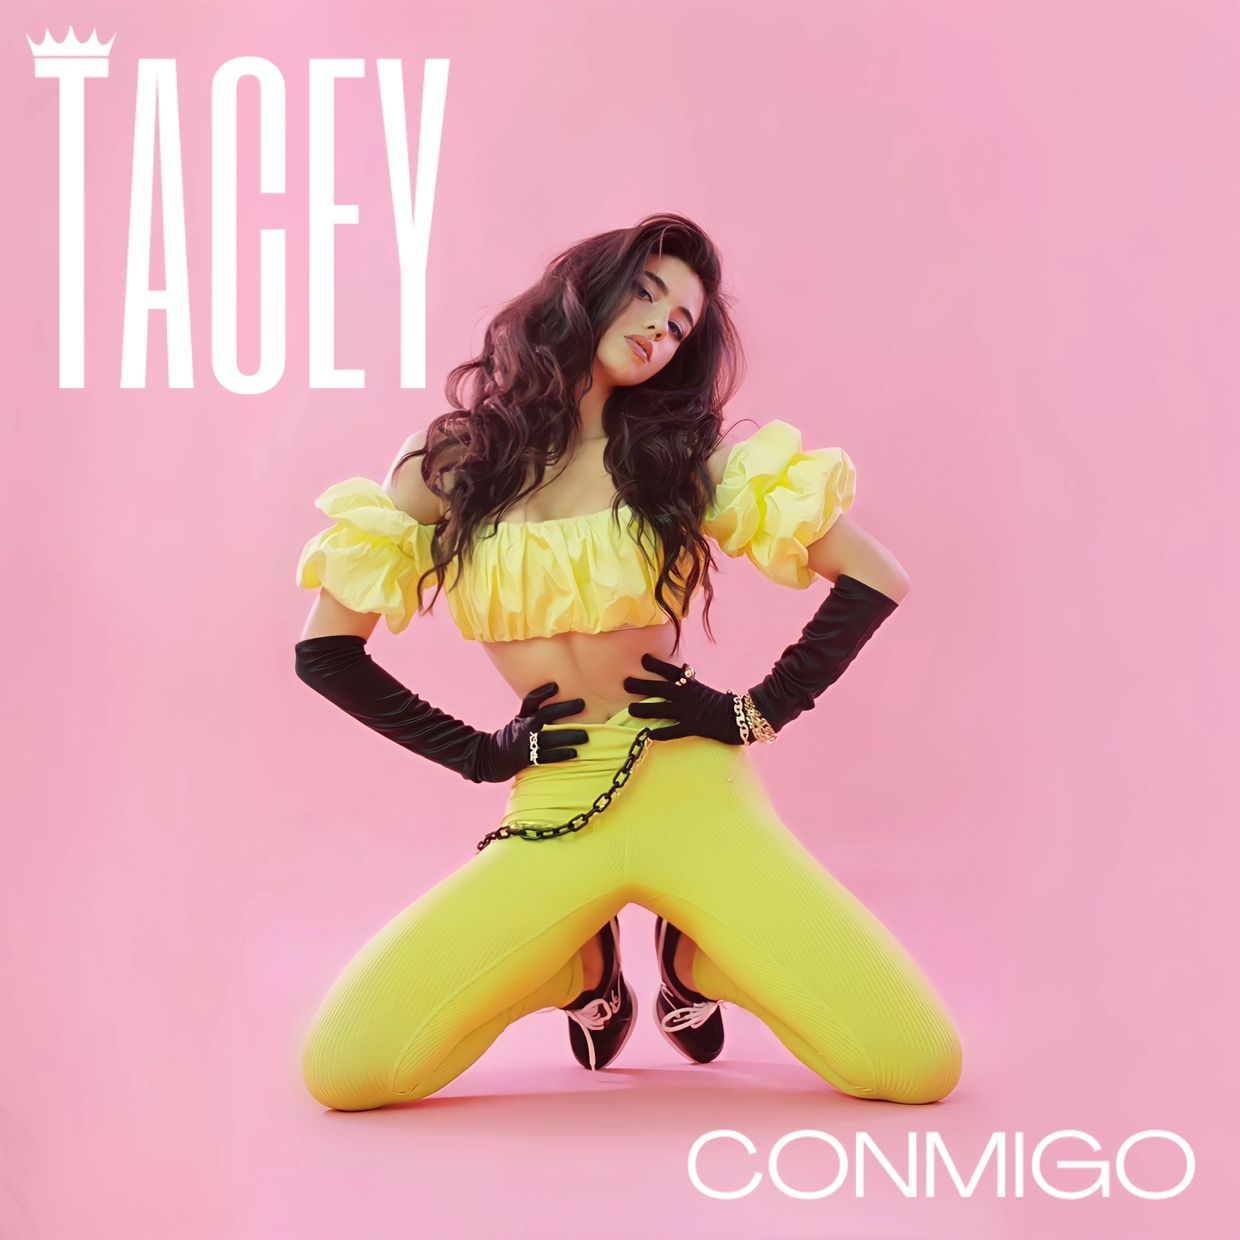 Tacey, Conmigo. New music.